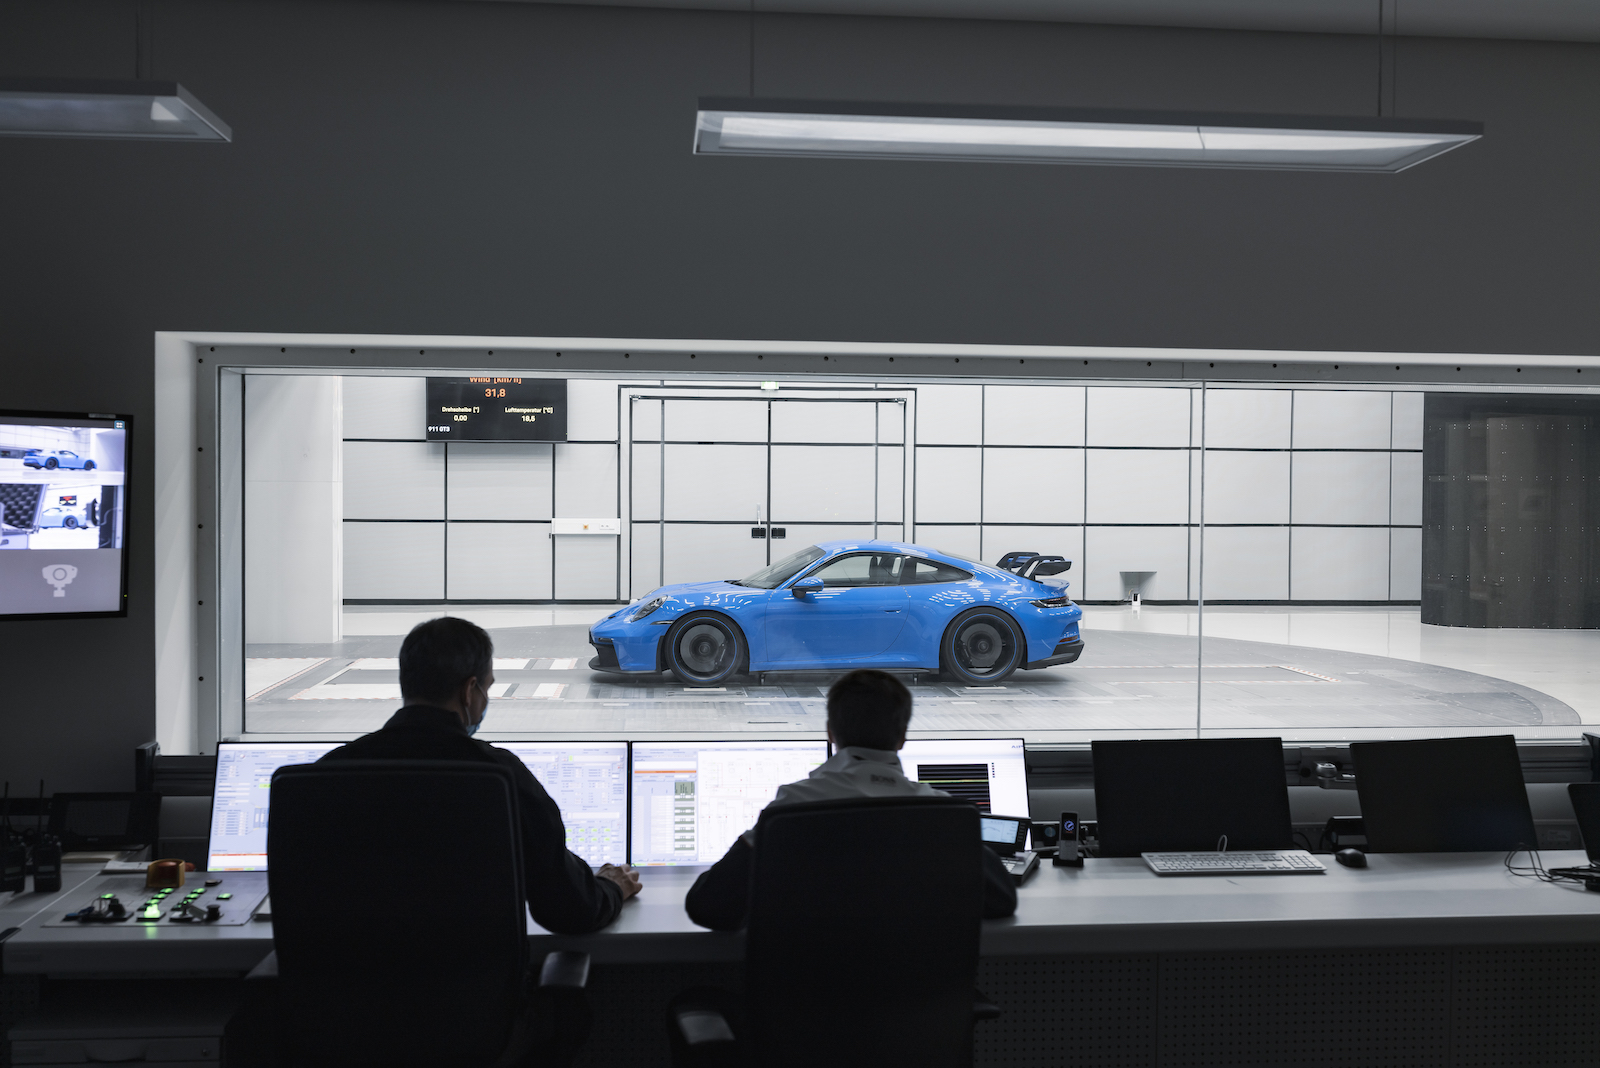  全新保時捷 911 GT3 歷經超過 160 小時的風洞測試。